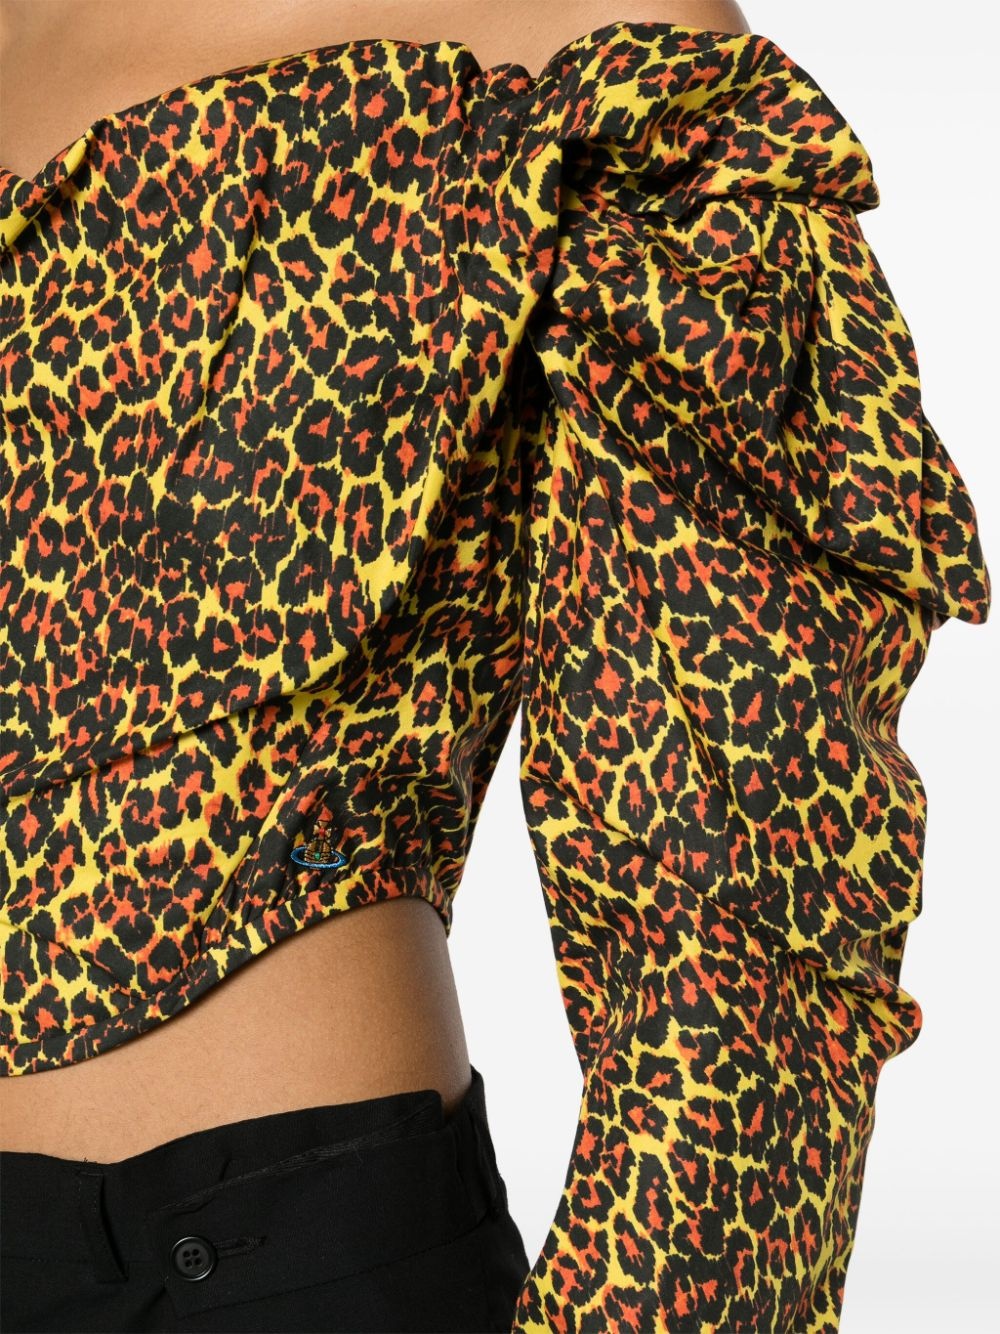 leopard-print corset top - 5